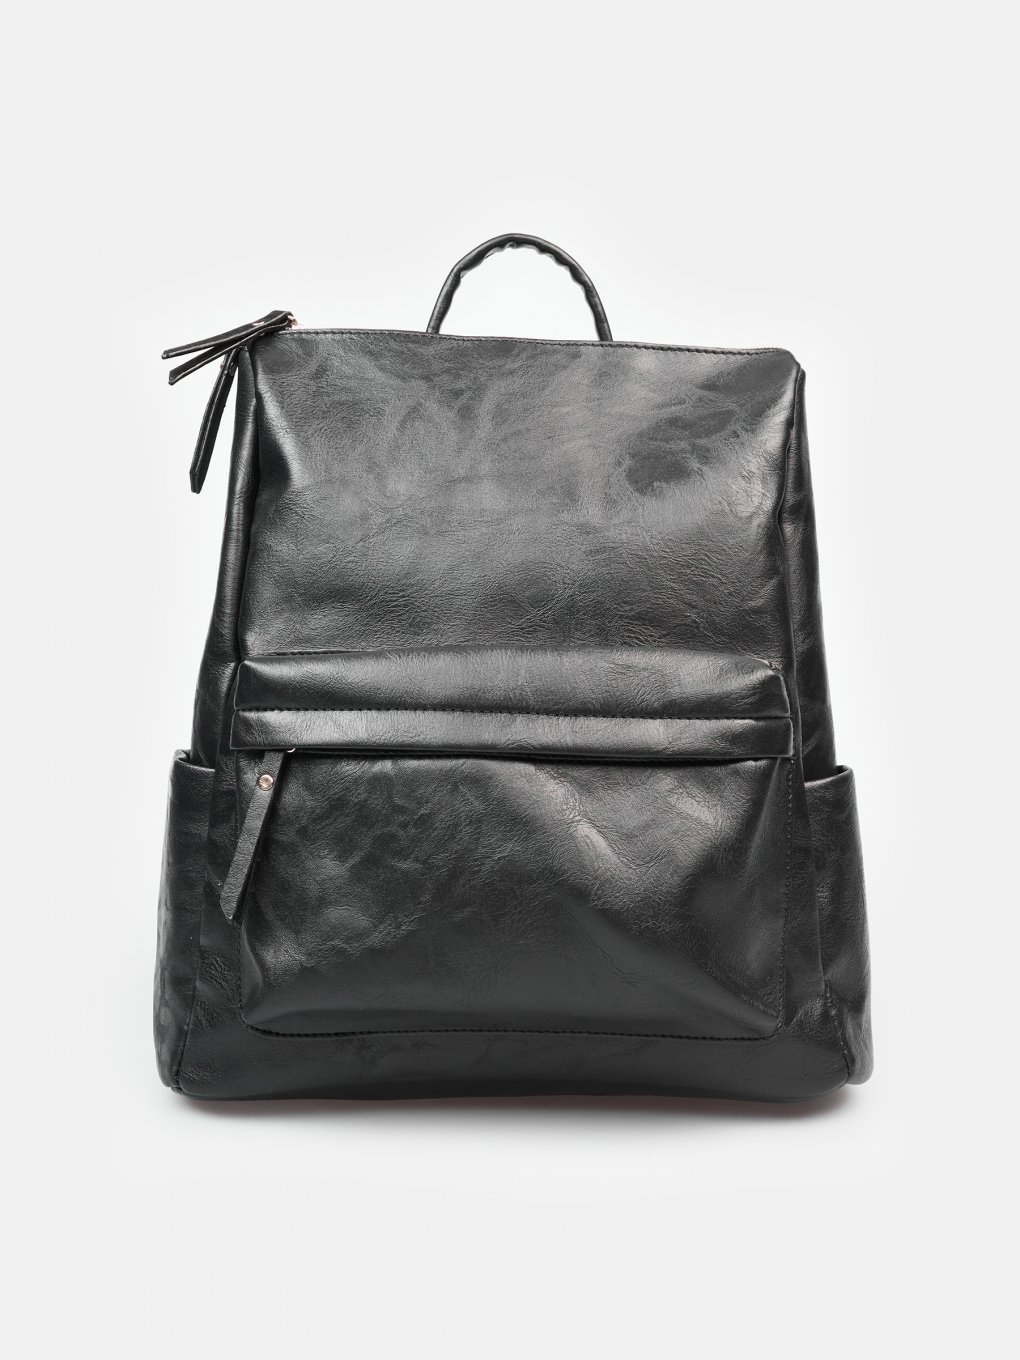 Womens Faux Leather Plain Messenger Handbag Ladies Shoulder Double Strap Bag 